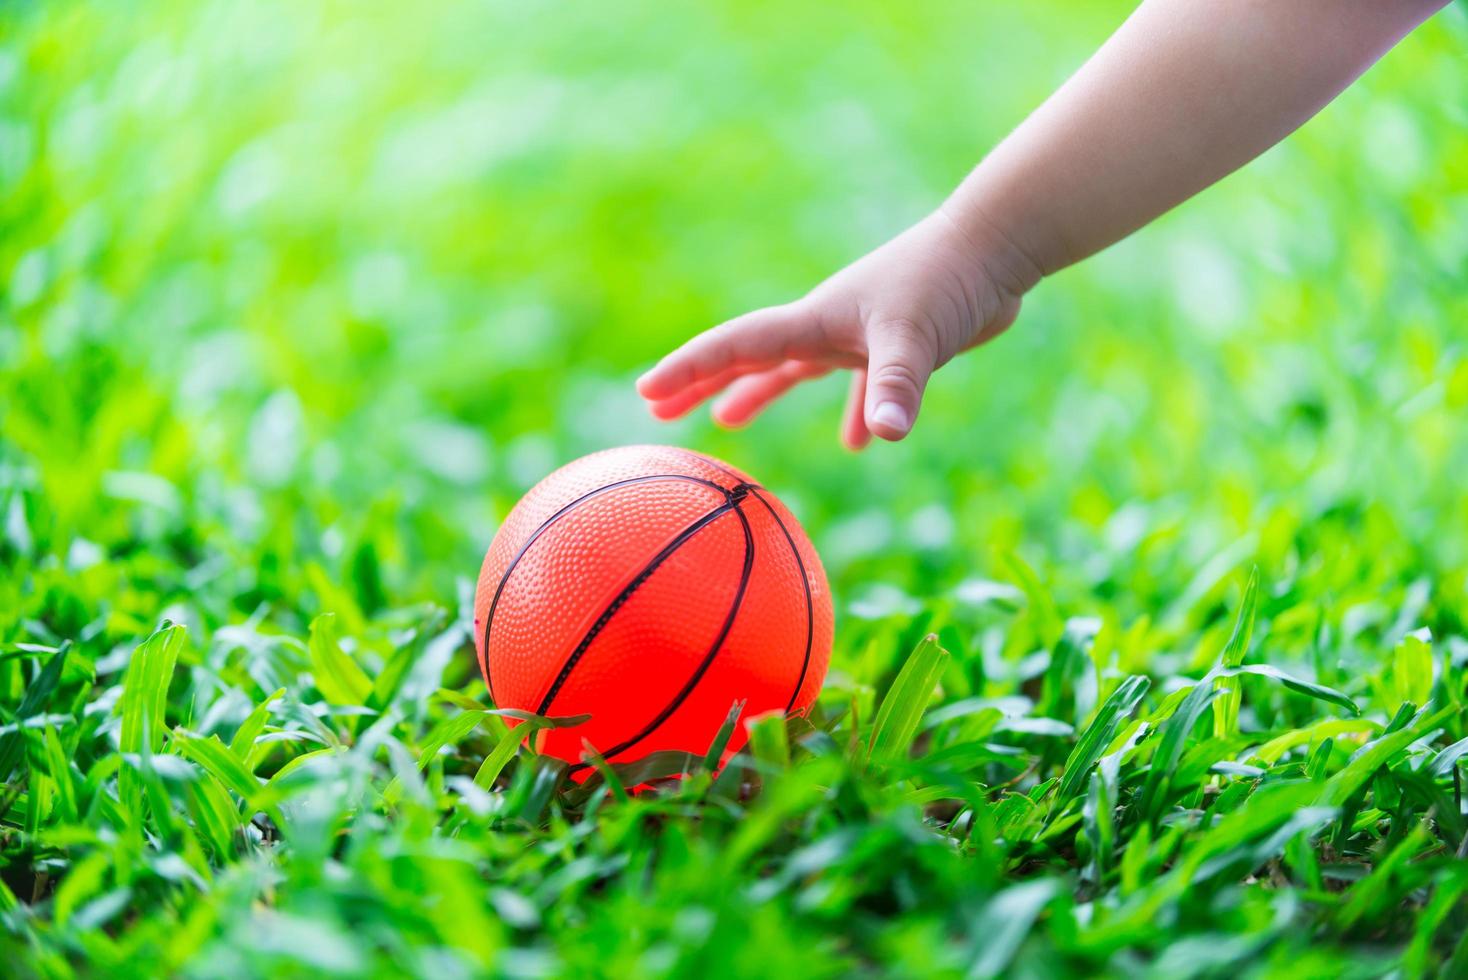 niña pequeña mano está alcanzando la bola naranja colocada sobre un césped verde refrescante. ella está recogiendo pelotas de goma. conceptos sensoriales y aprendizaje. foto